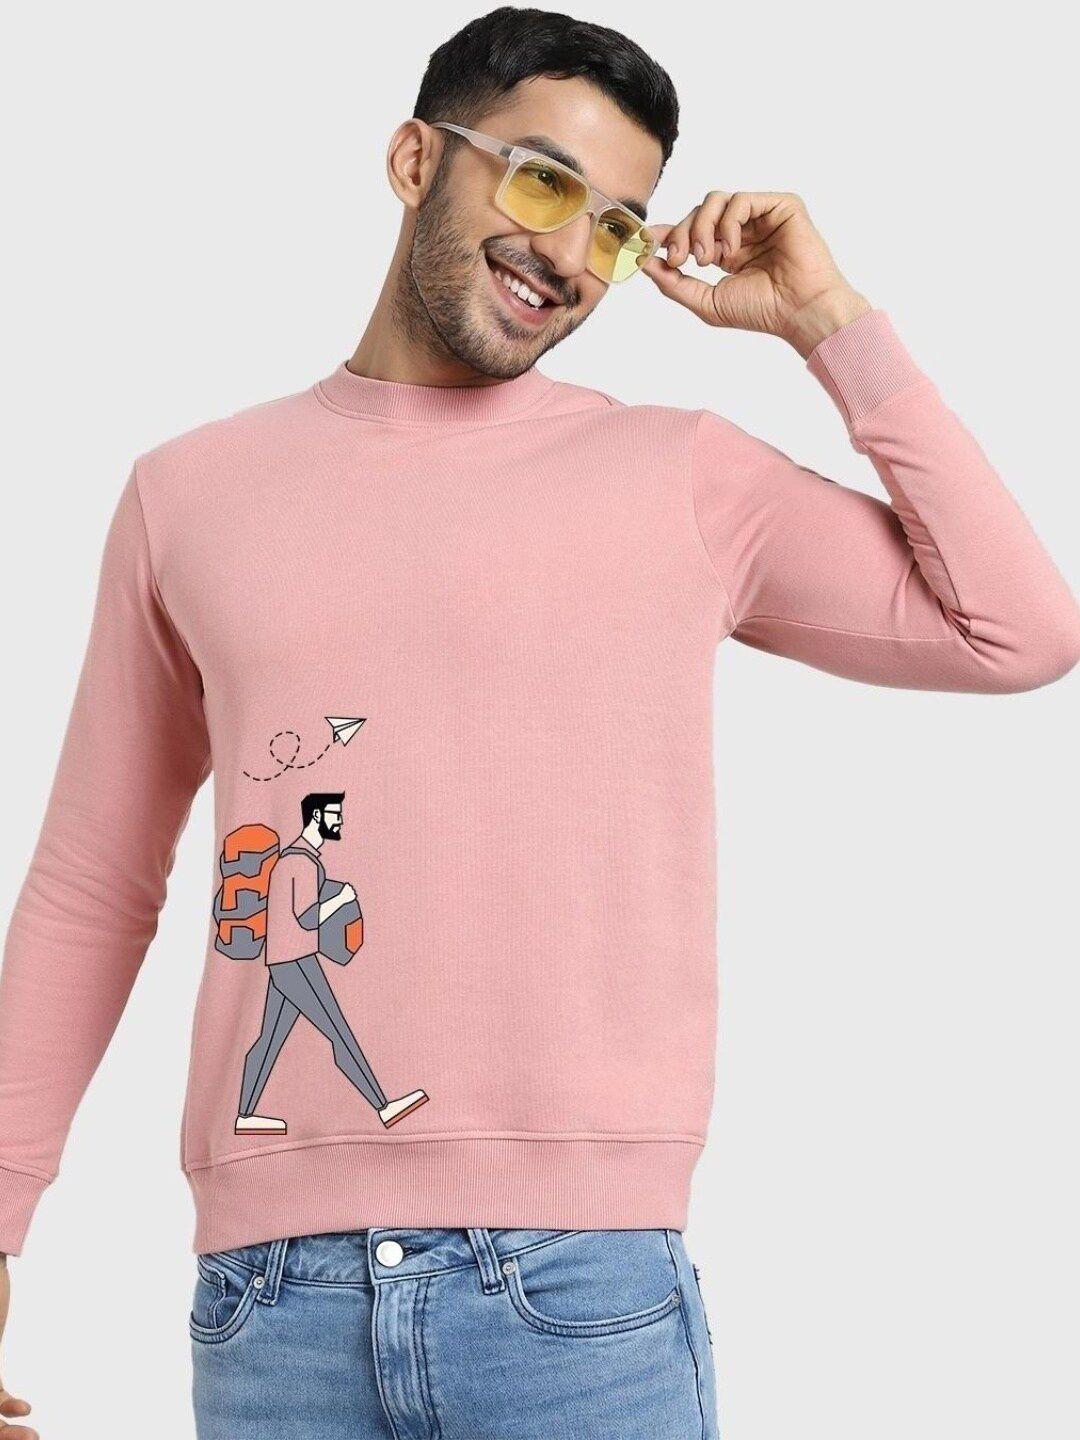 bewakoof men printed fleece sweatshirt